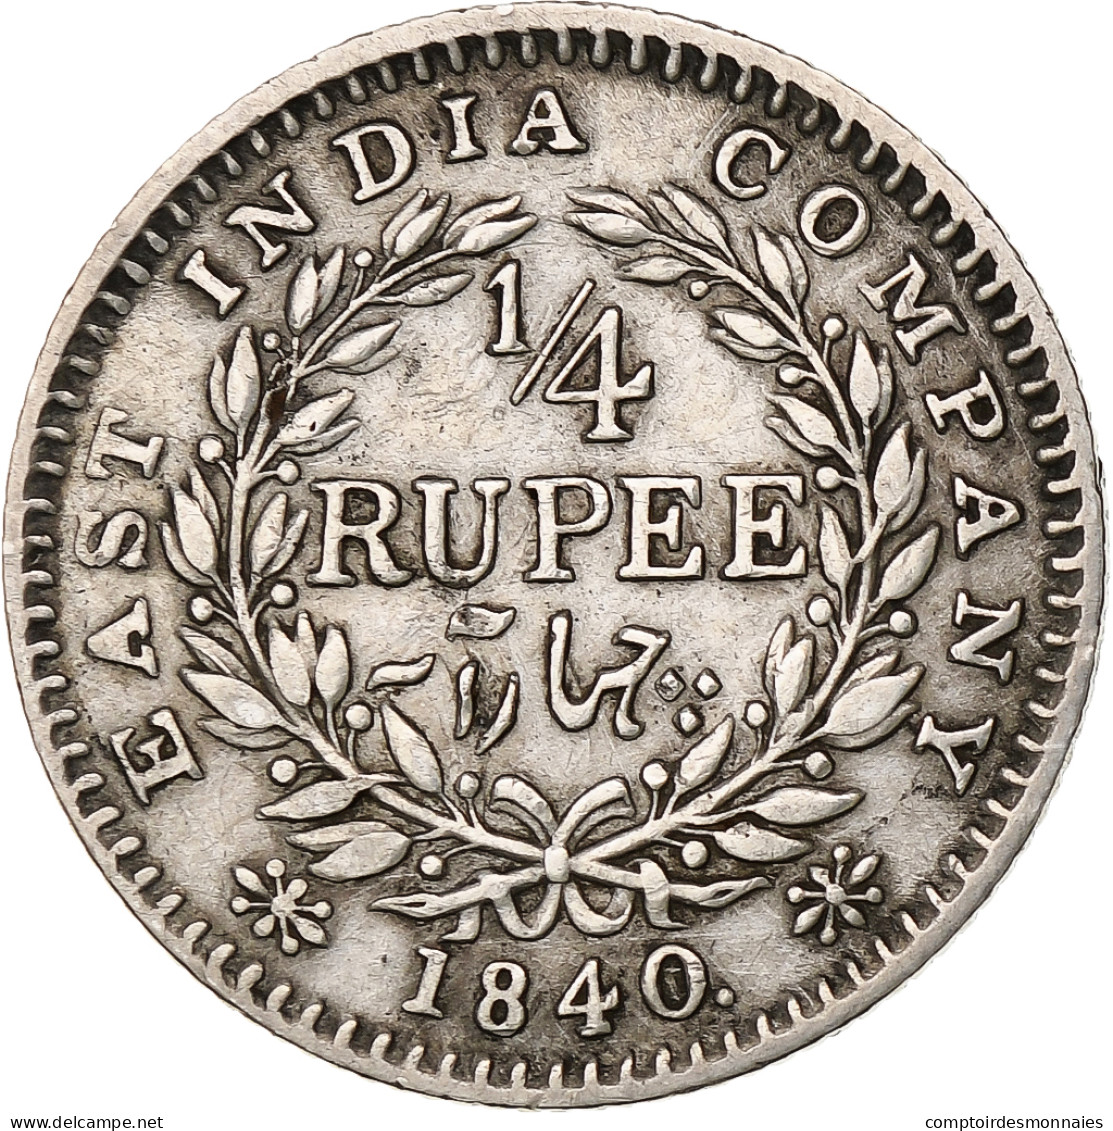 Inde Britannique, Victoria, 1/4 Rupee, 1840, Bombay, Argent, TB+, KM:453.1 - Colonies